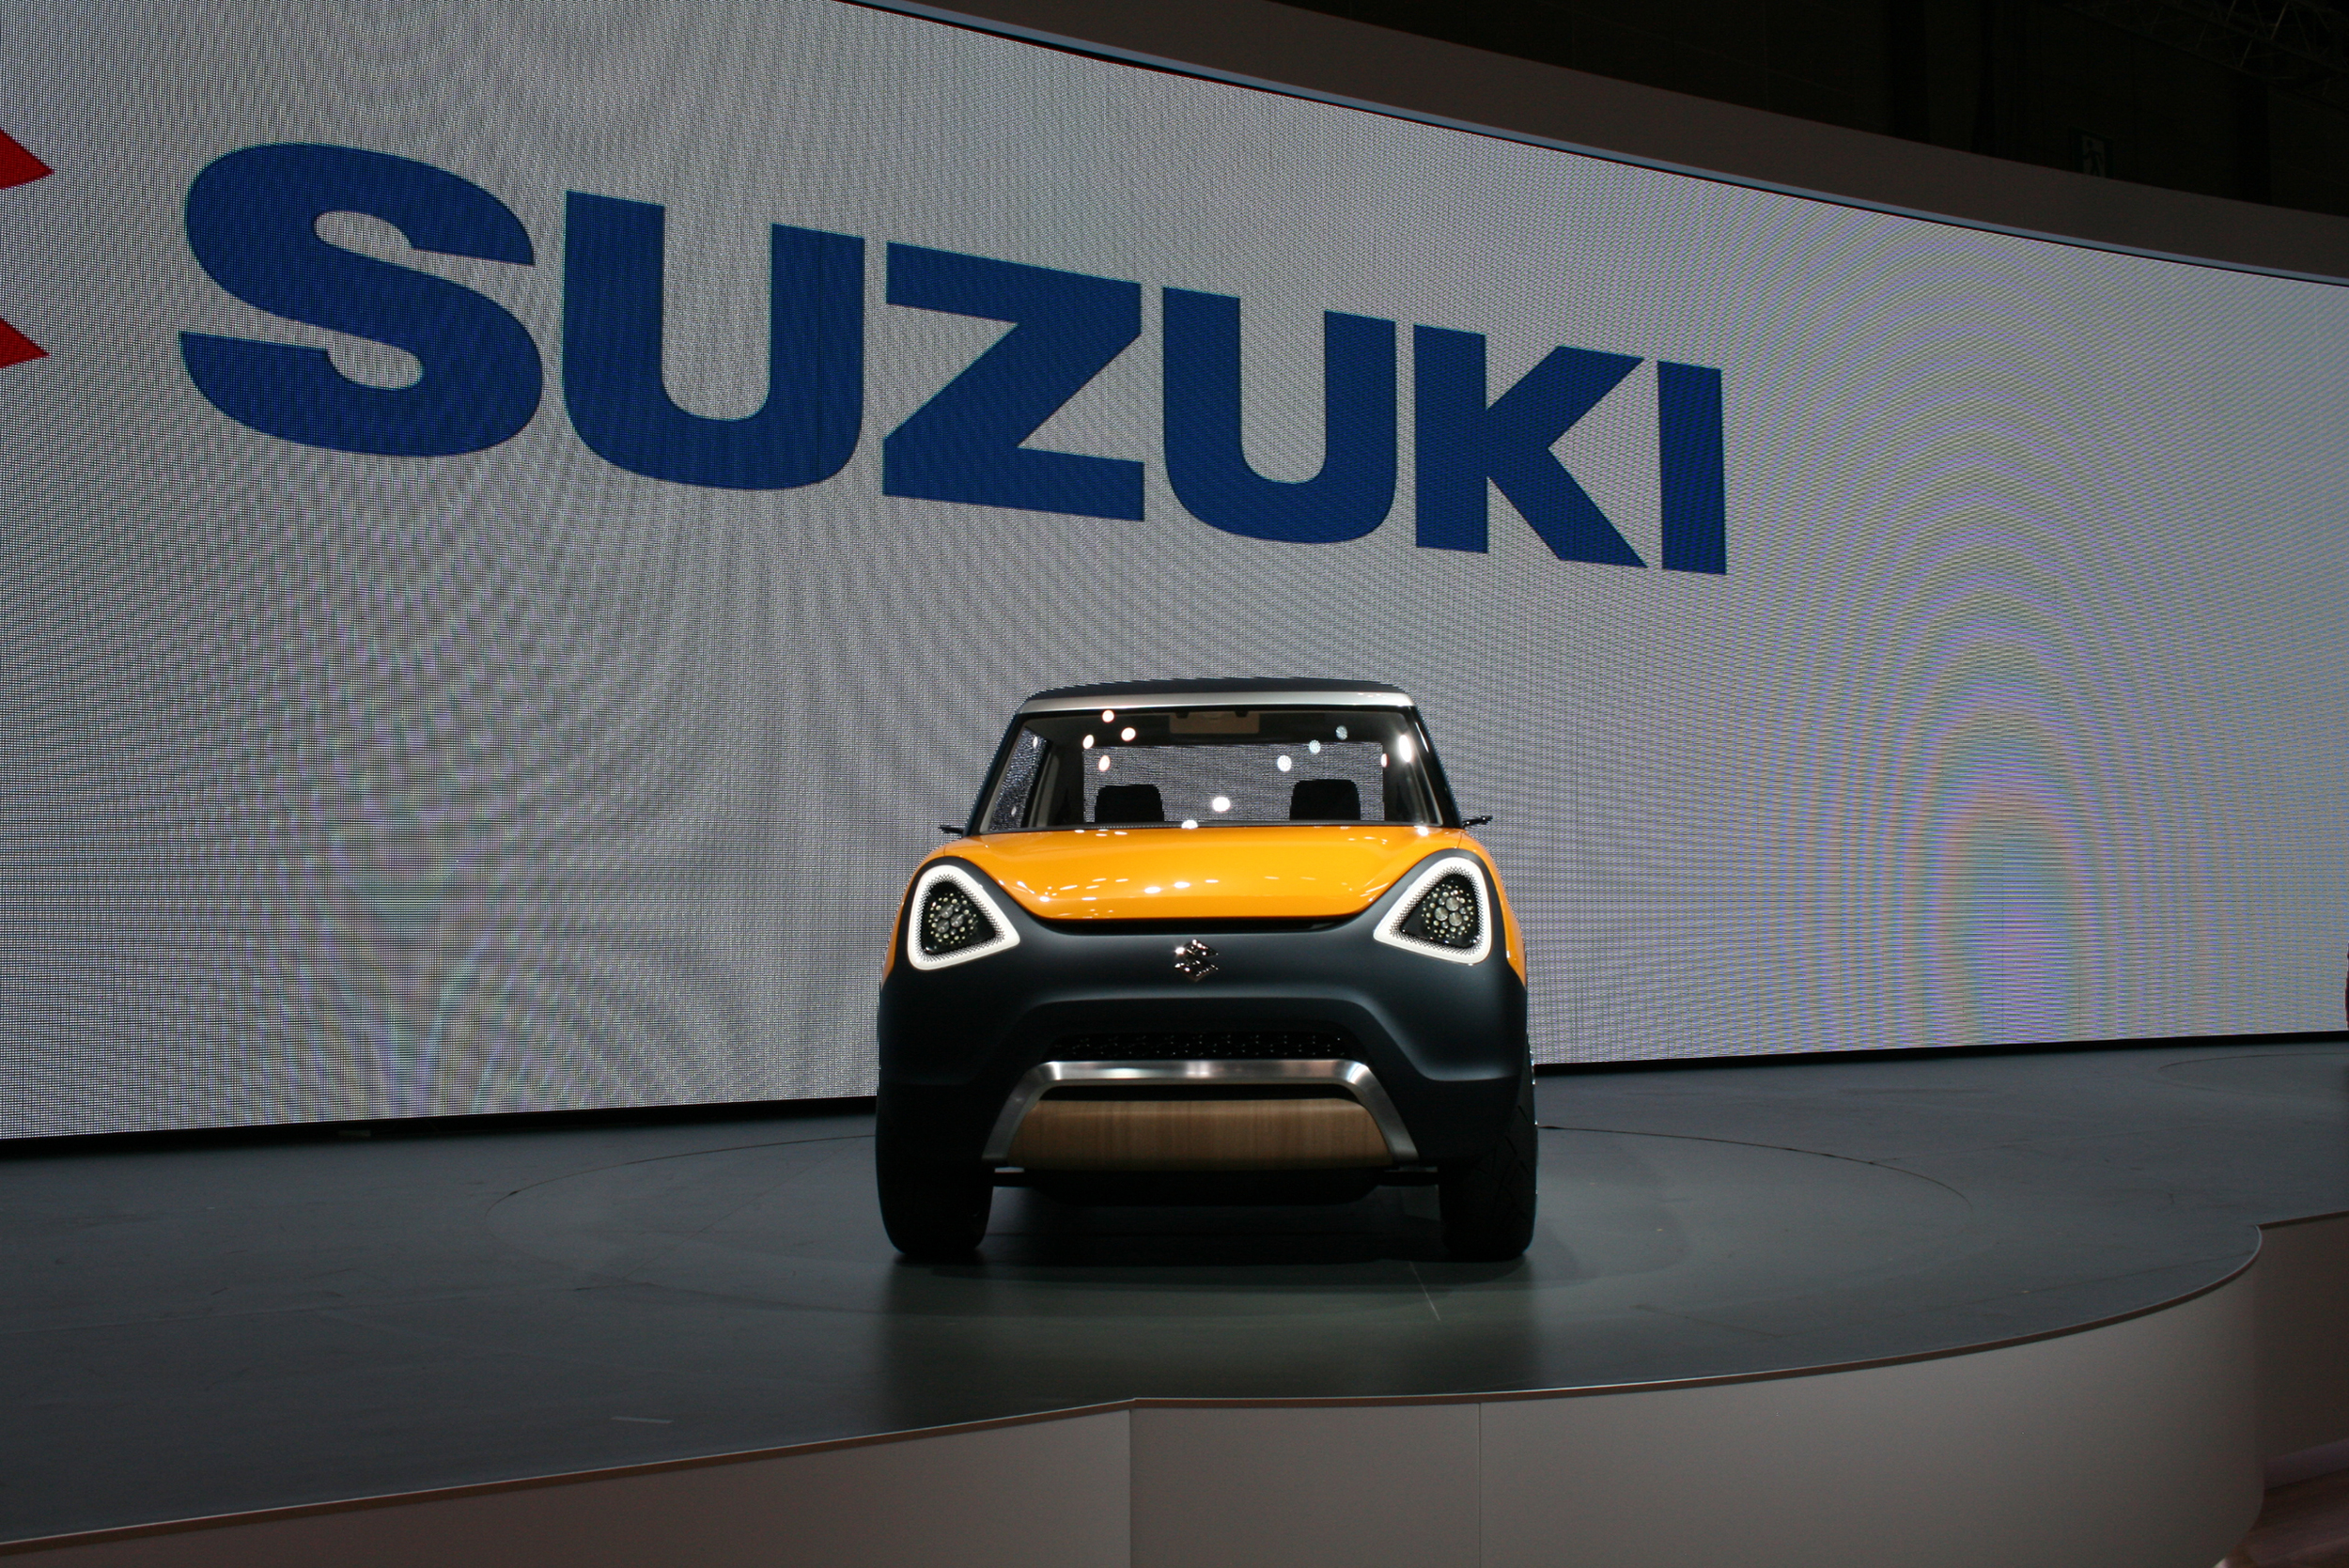 Suzuki unveils Mighty Deck in Tokyo